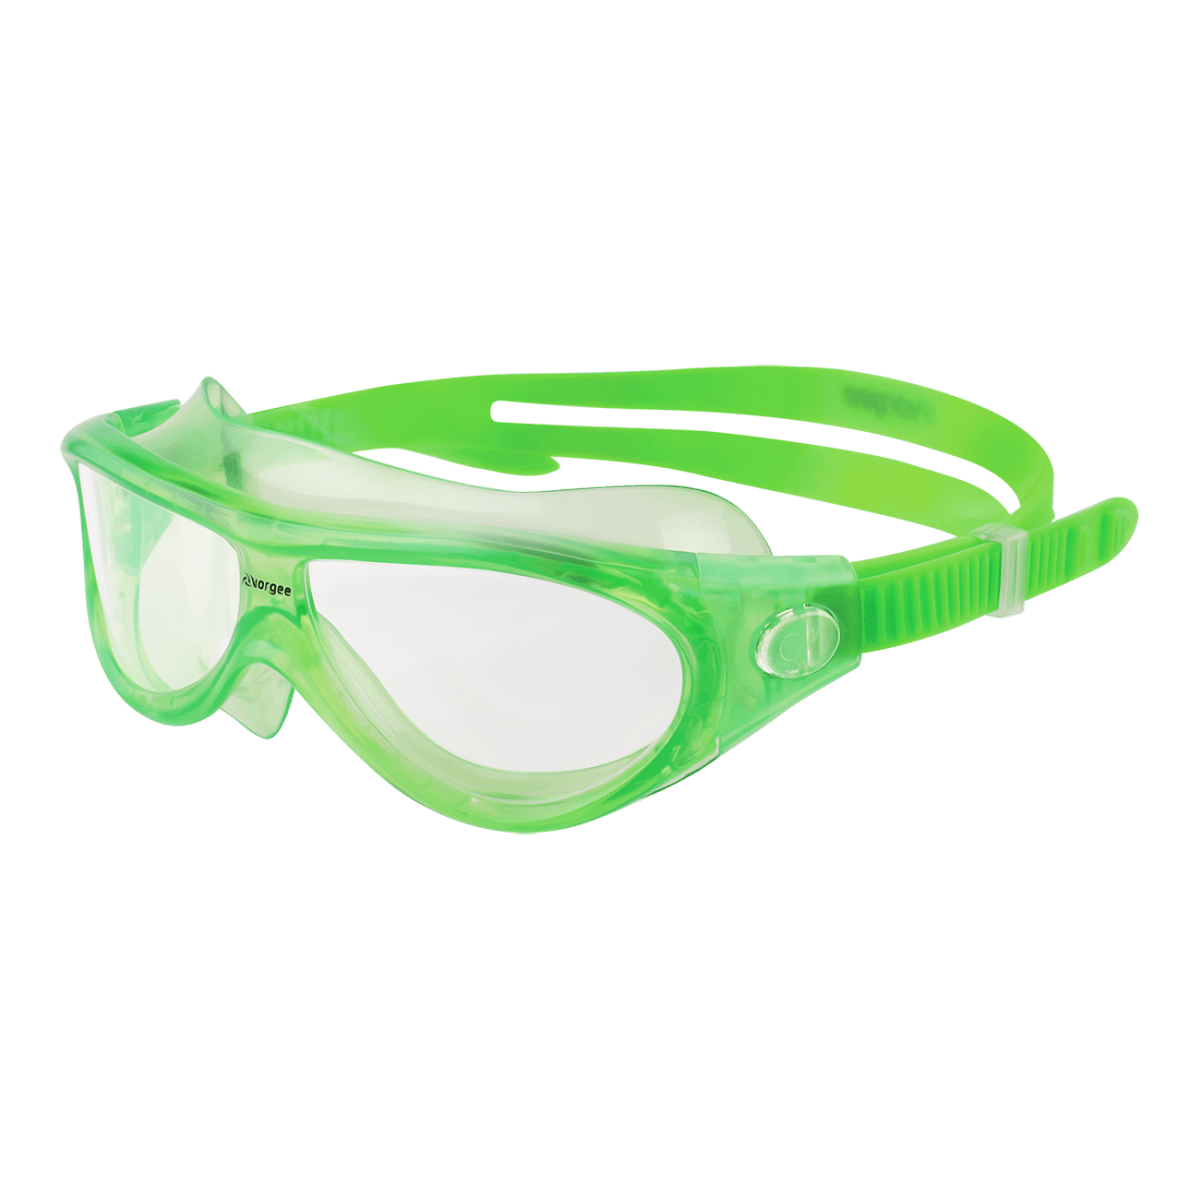 Vorgee Starfish Kids Swim Goggles